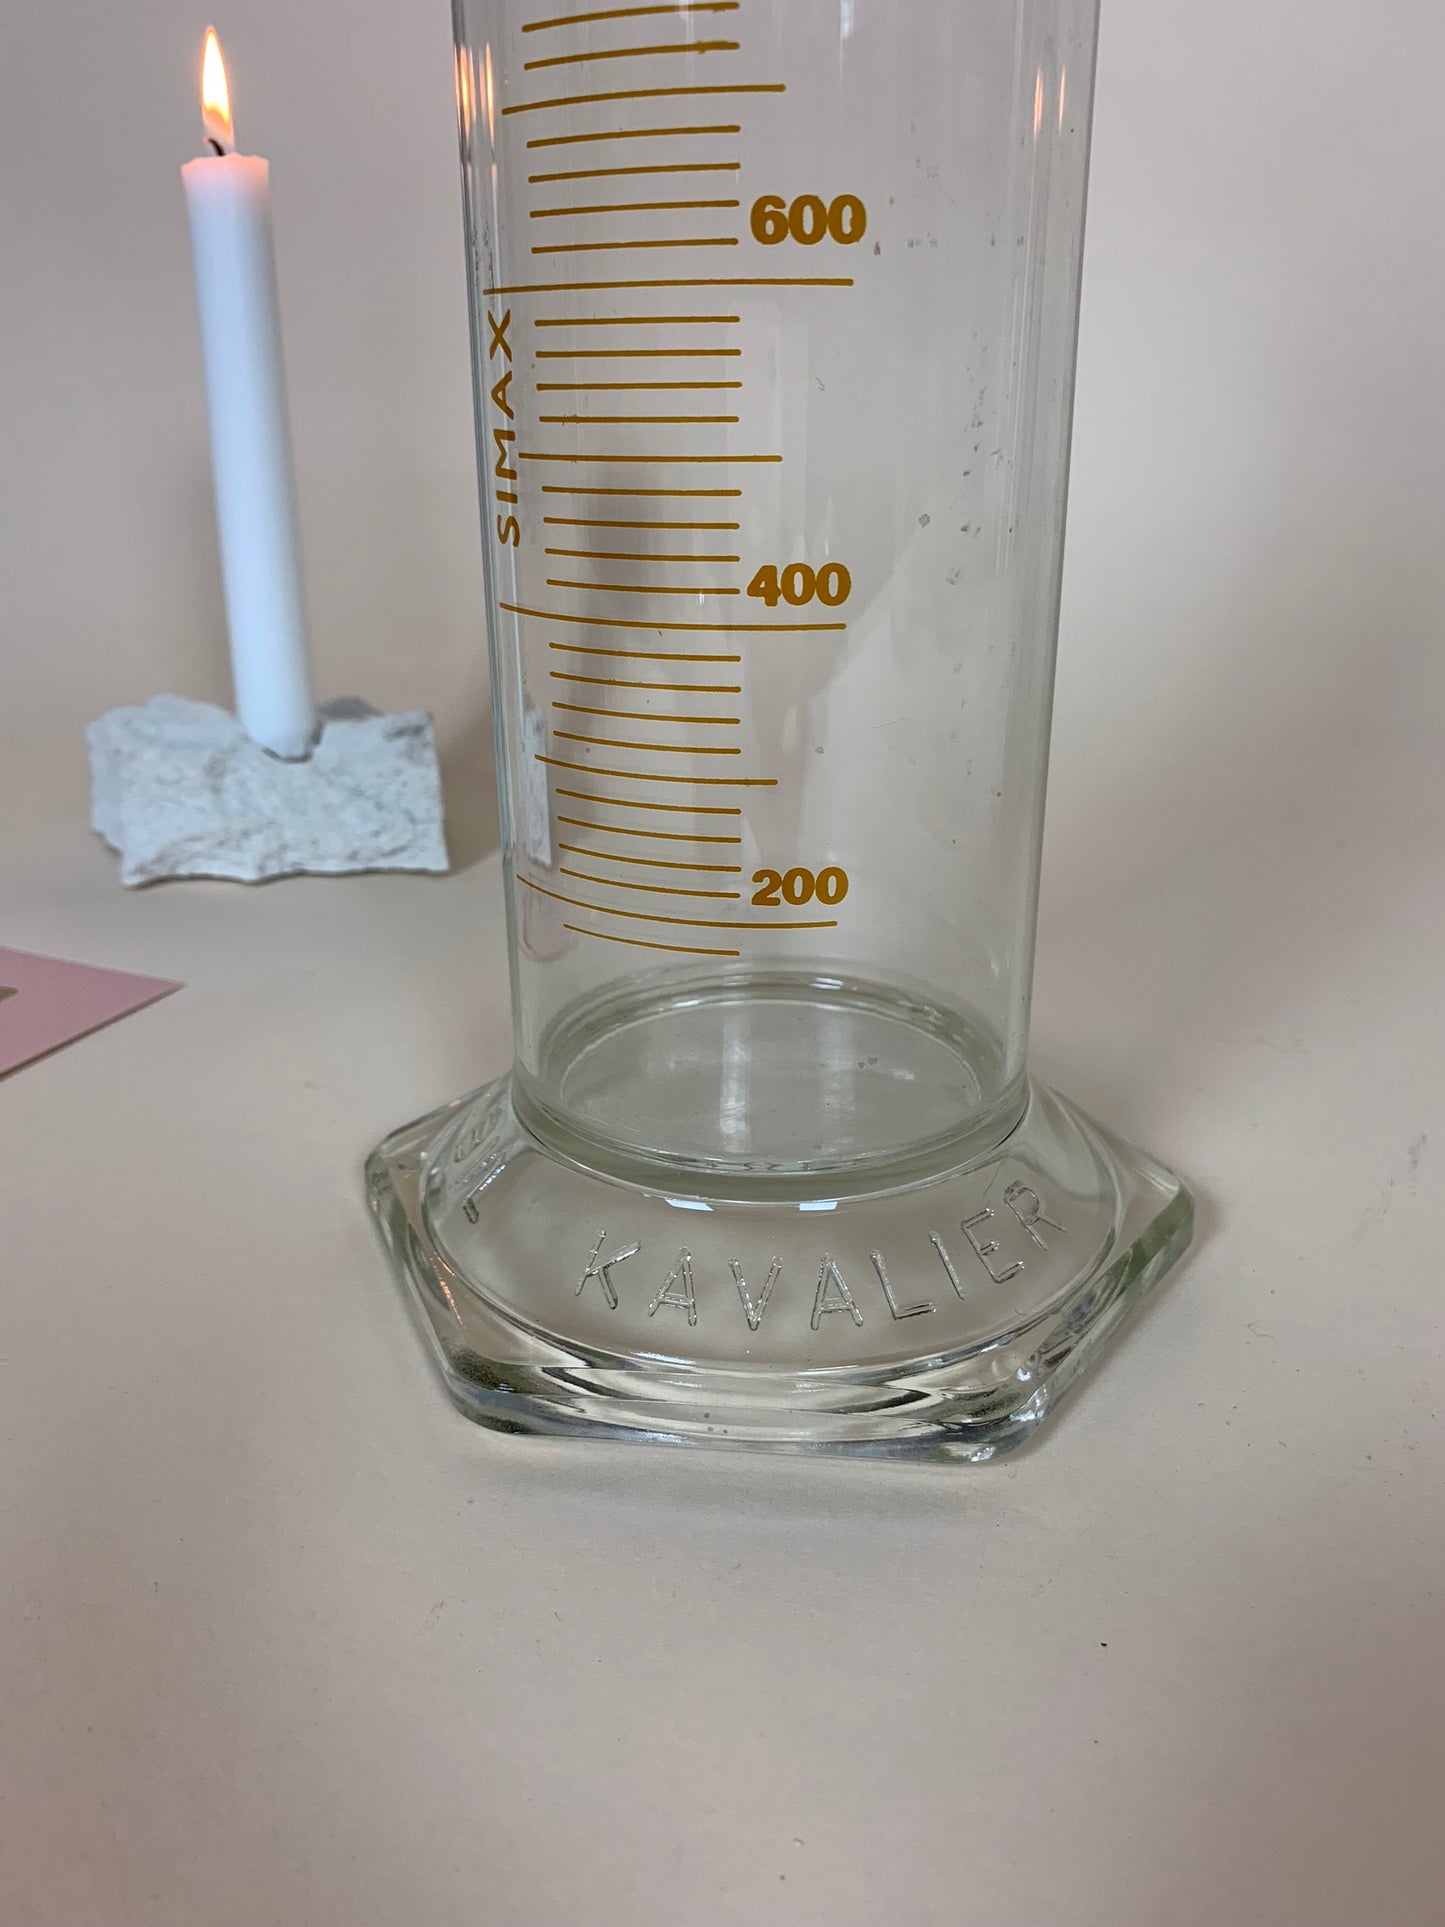 Messglas aus dem Labor